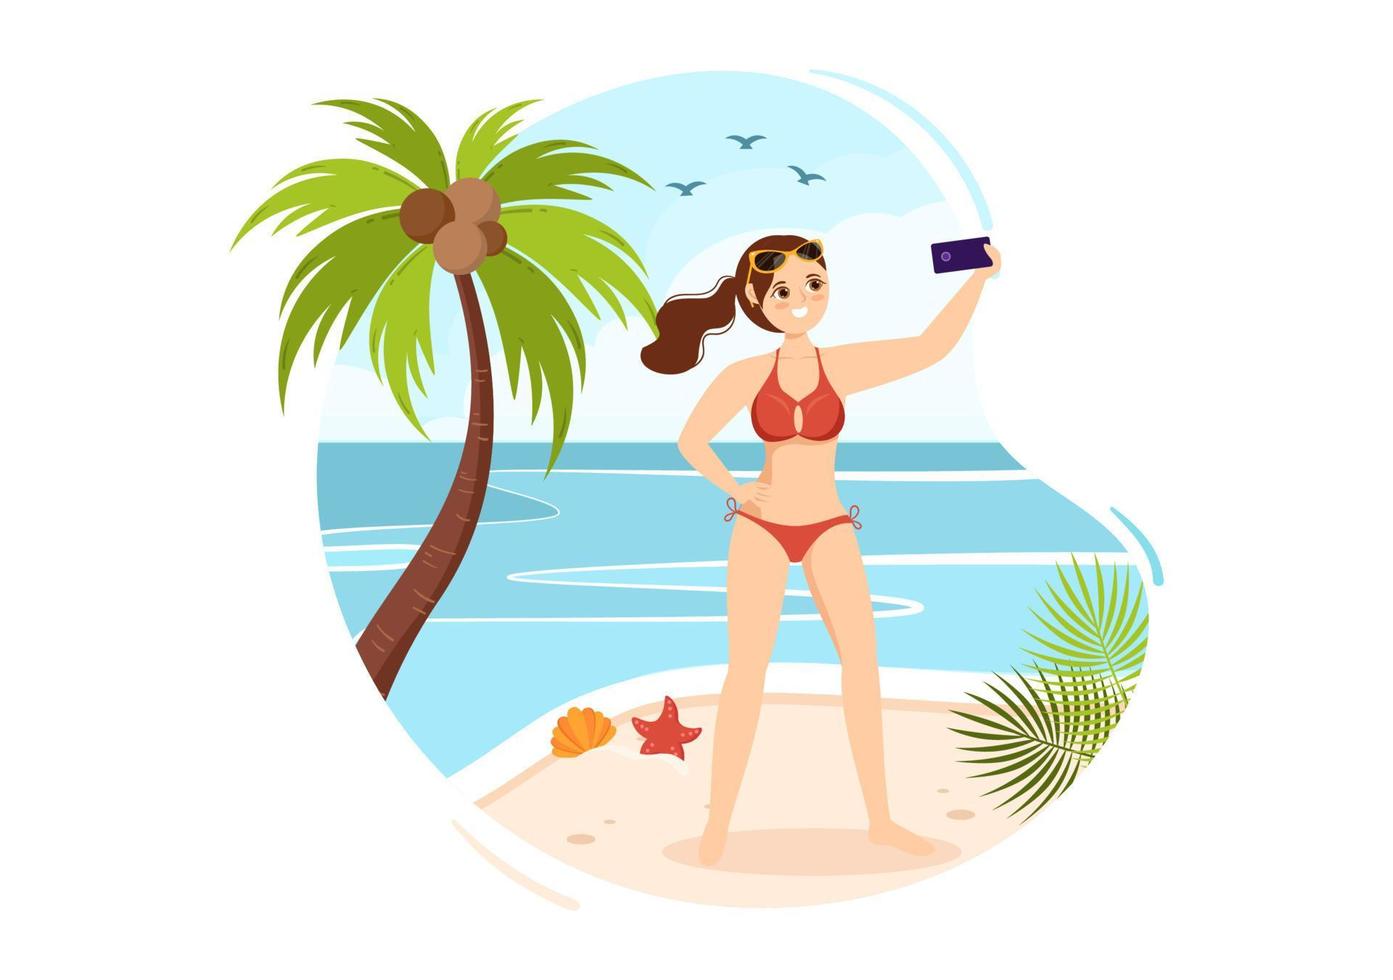 traje de baño con diferentes diseños de bikinis y trajes de baño para mujeres en la playa de verano en dibujos animados de estilo plano ilustración de plantillas dibujadas a mano vector